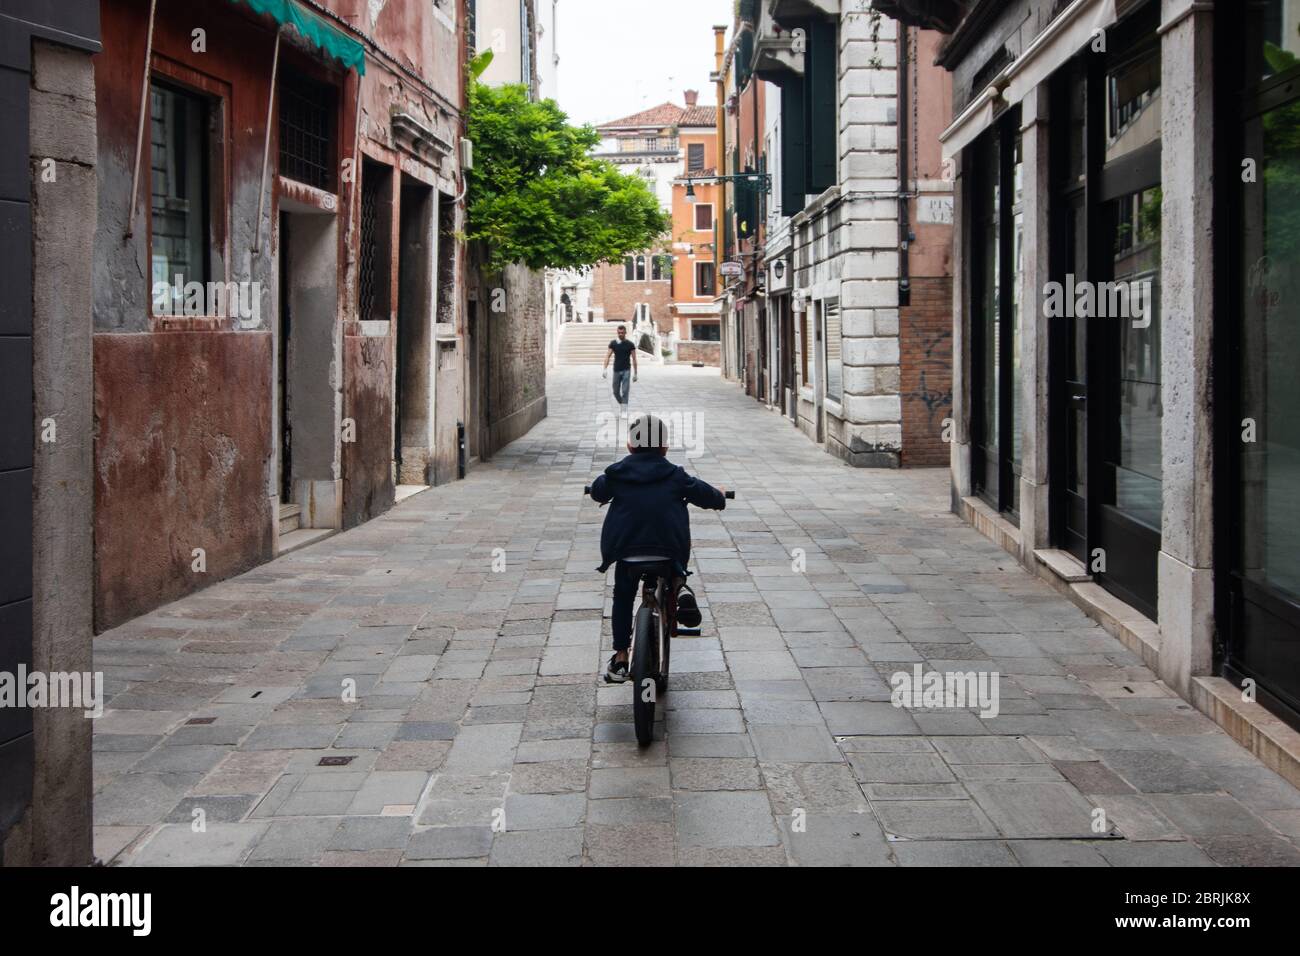 VENEZIA, ITALIA - MAGGIO: Un bambino corre in bicicletta nelle strade vuote il 18 maggio 2020 a Venezia, Italia. Ristoranti, bar, caffè, parrucchiere e altri negozi Foto Stock